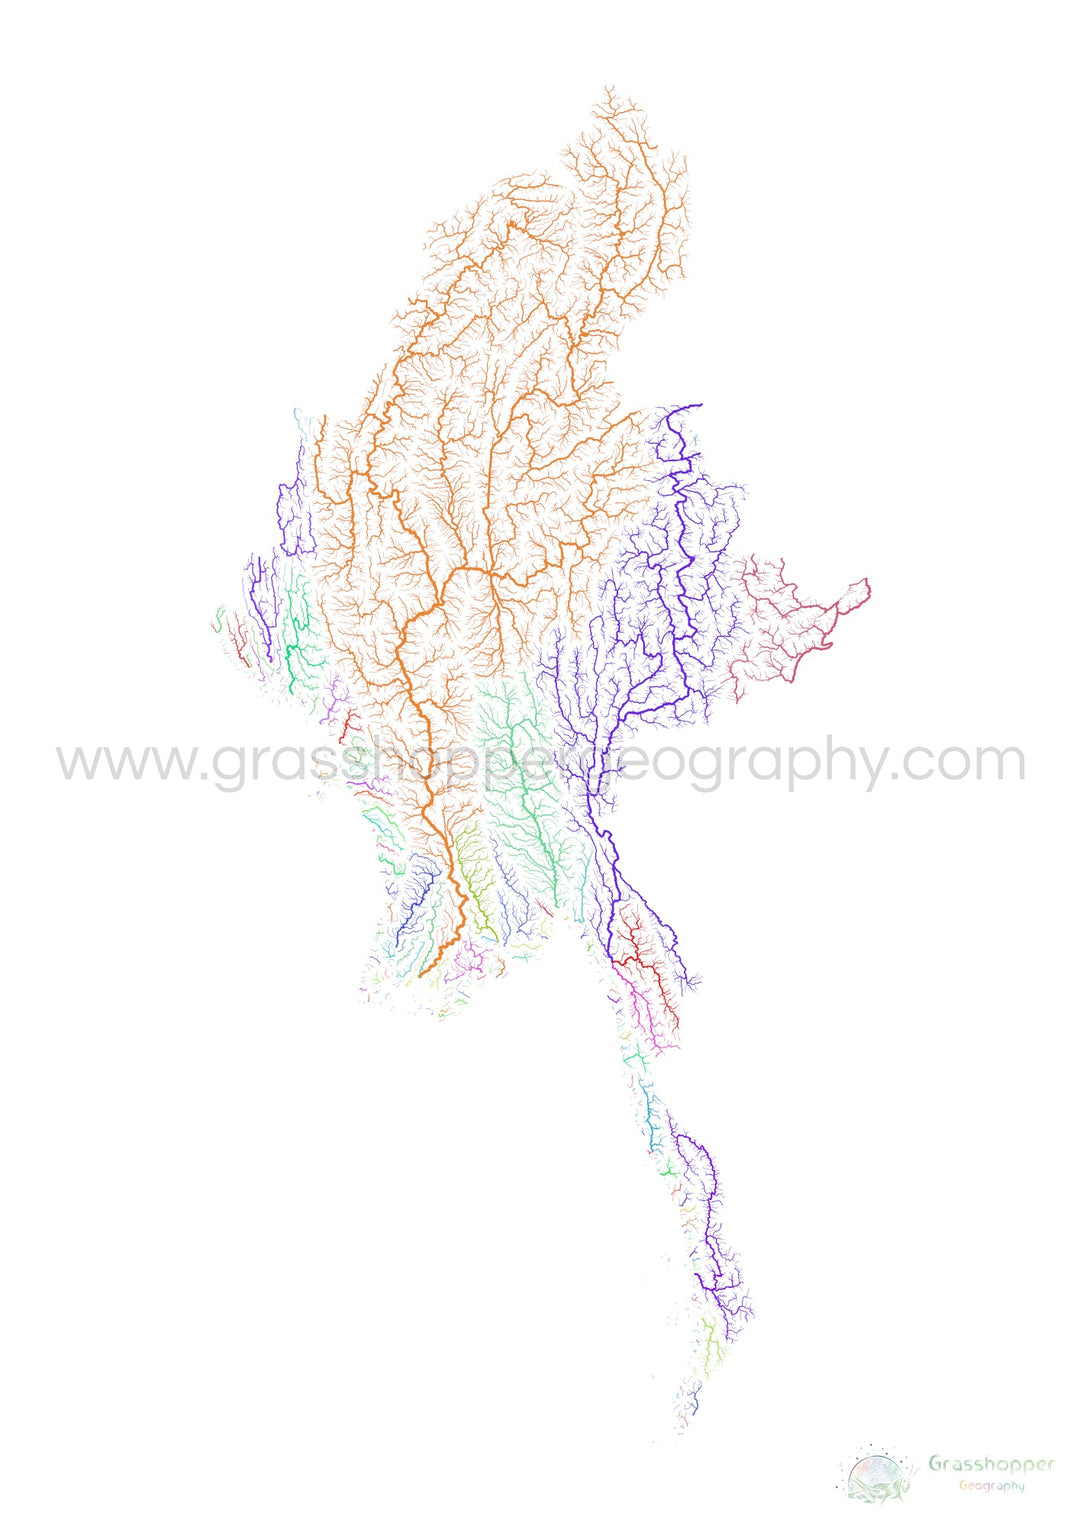 Myanmar - Mapa de la cuenca fluvial, arco iris sobre blanco - - Impresión de bellas artes